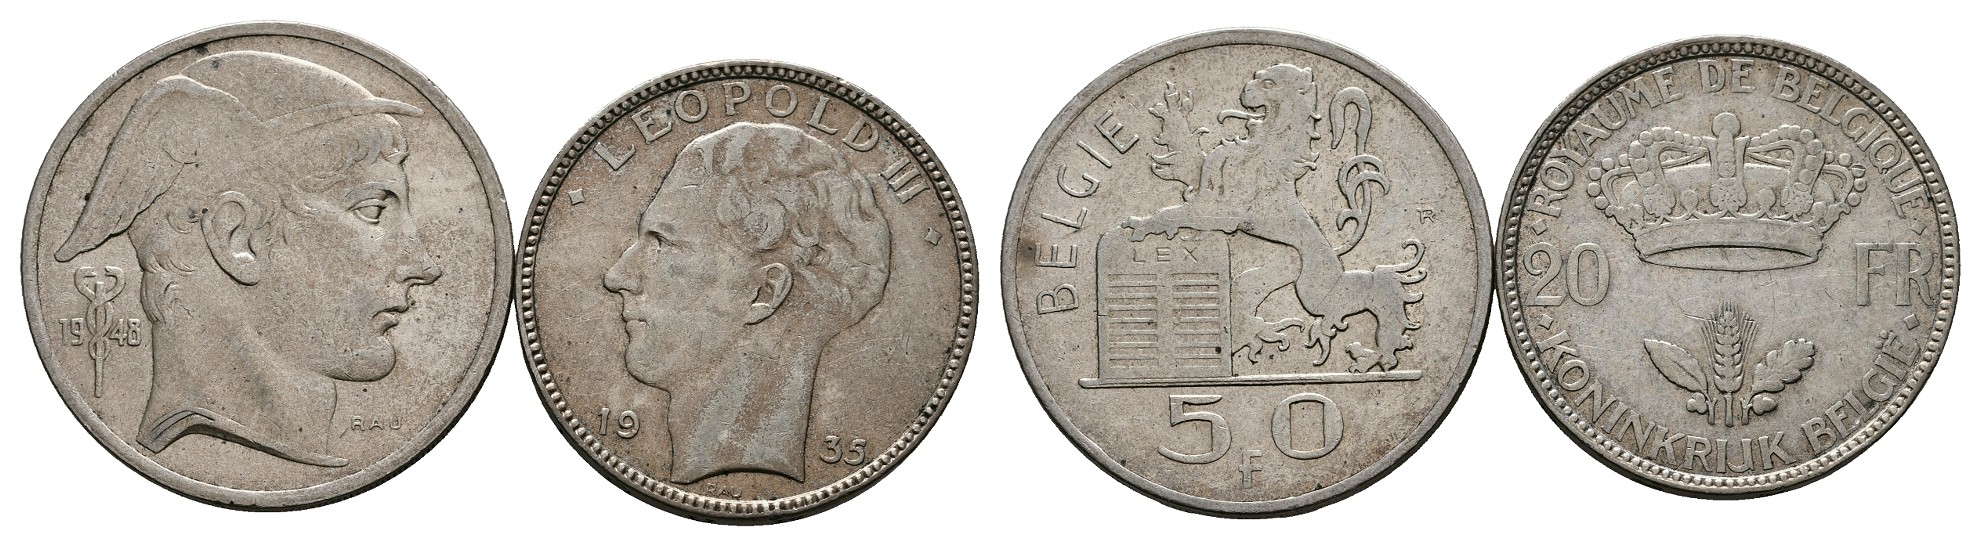  Linnartz Großbritannien Elisabeth II. 1 Sovereign 1966 vz-stgl Gewicht: 7,99g/917 GOLD   